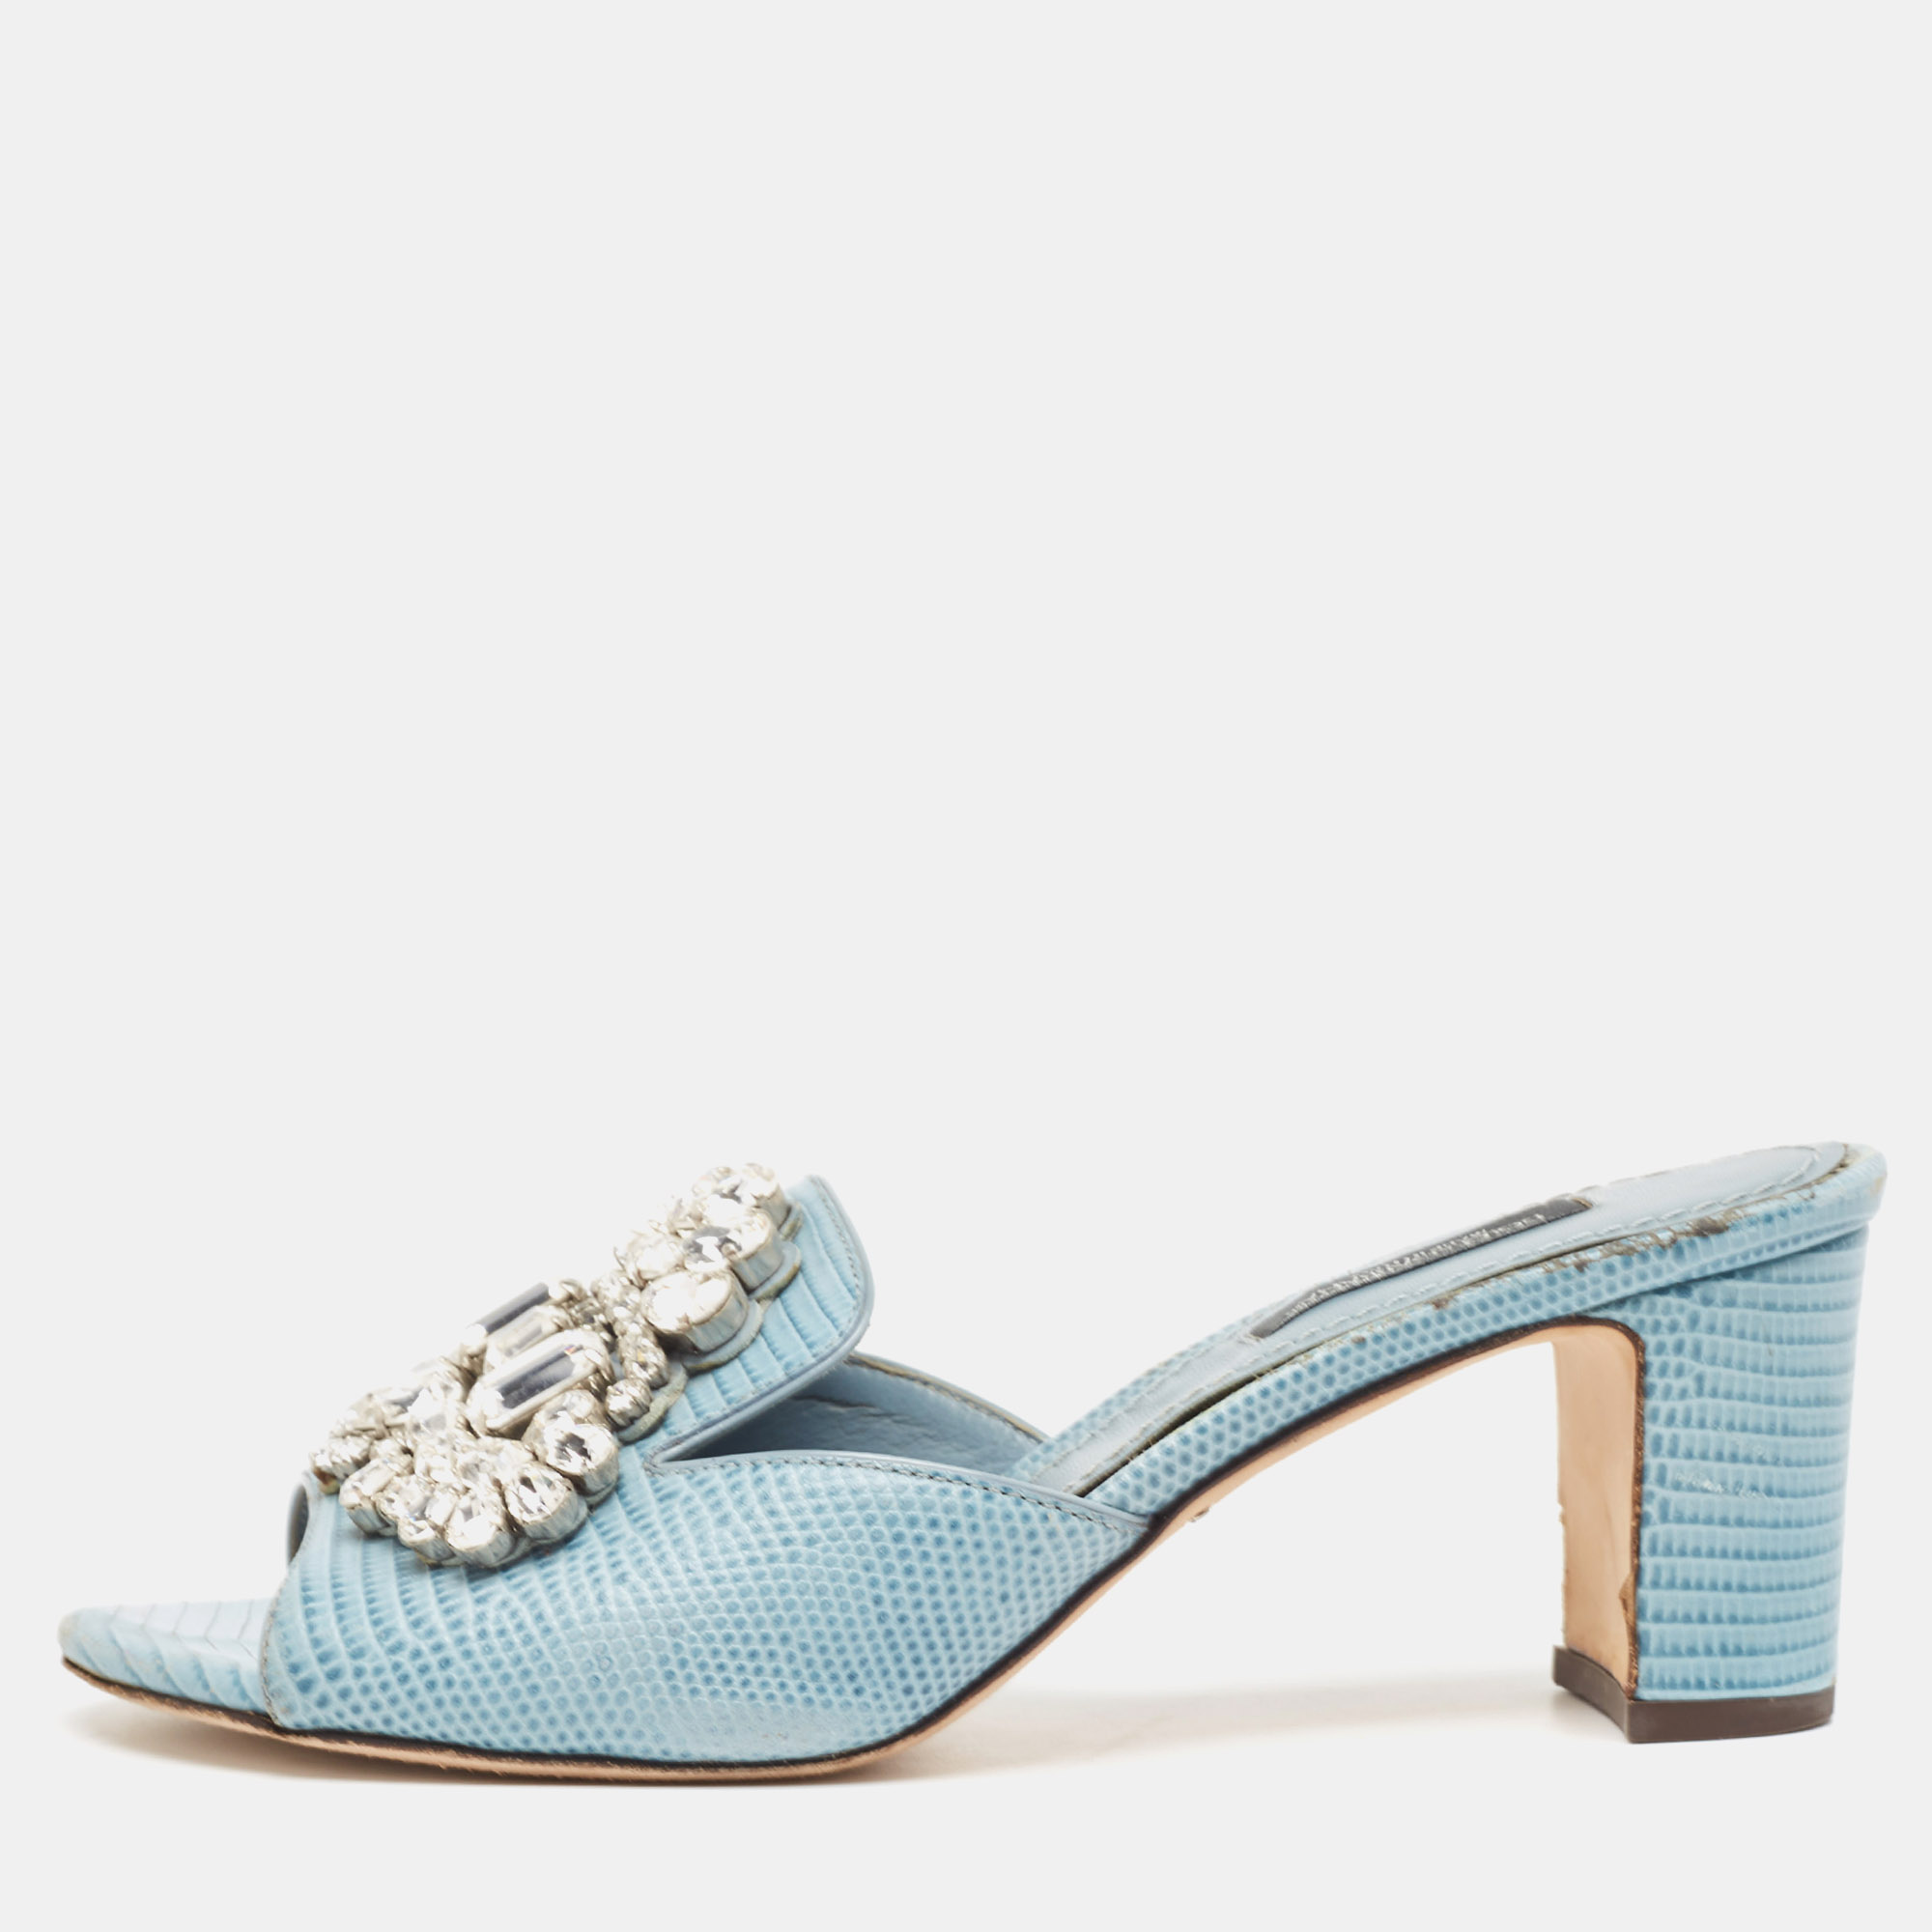 Dolce & gabbana light blue embossed lizard crystal embellished slide sandals size 36